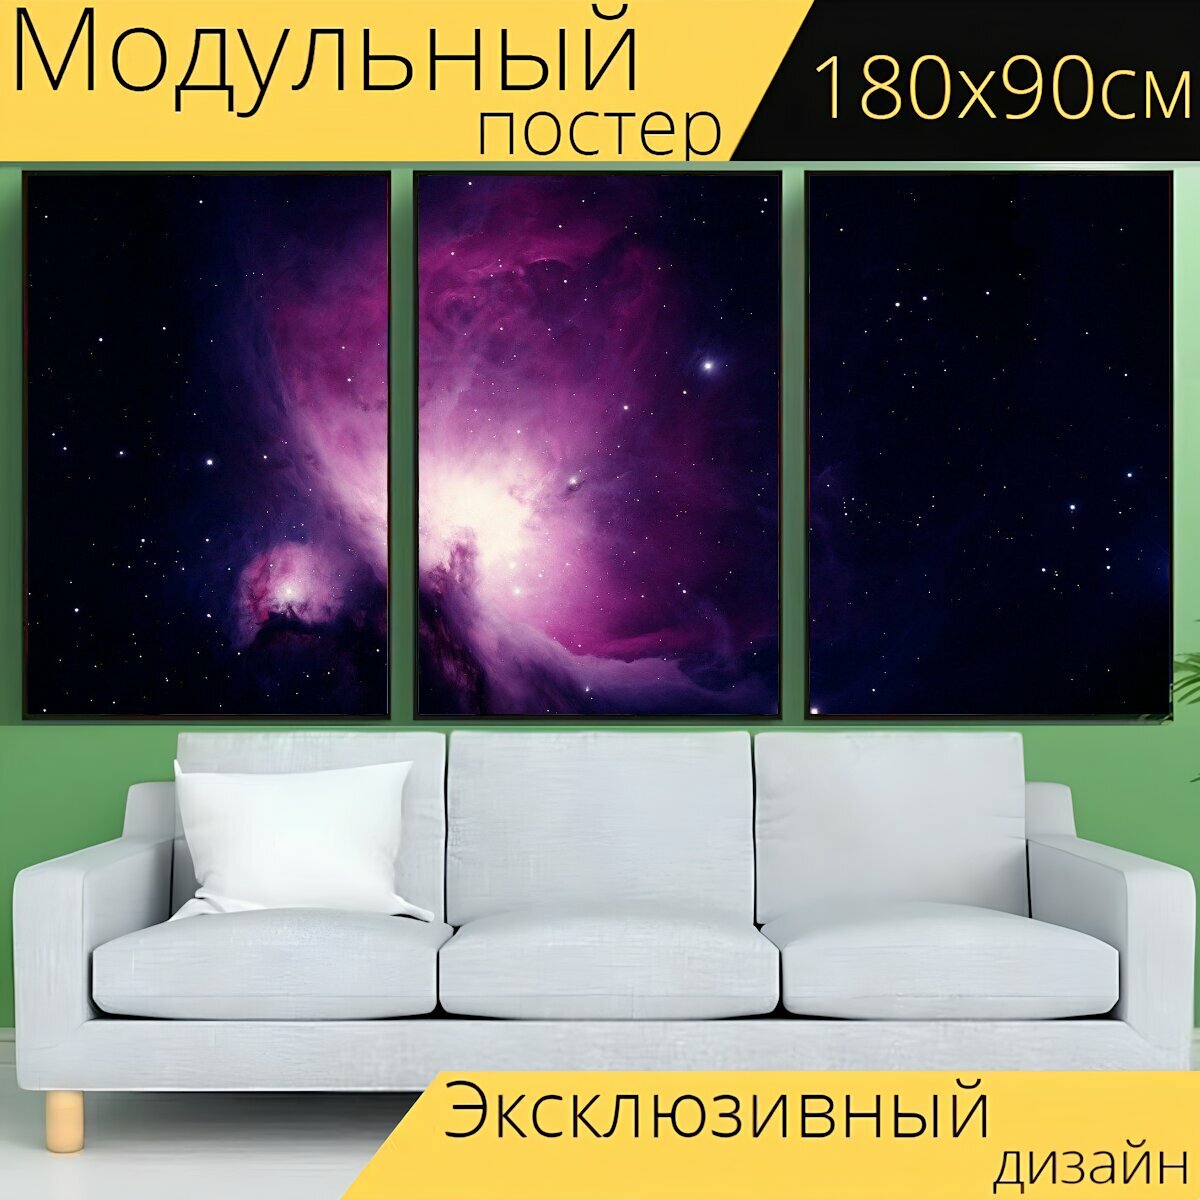 Модульный постер "Туманность ориона, эмиссионная туманность, созвездие орион" 180 x 90 см. для интерьера